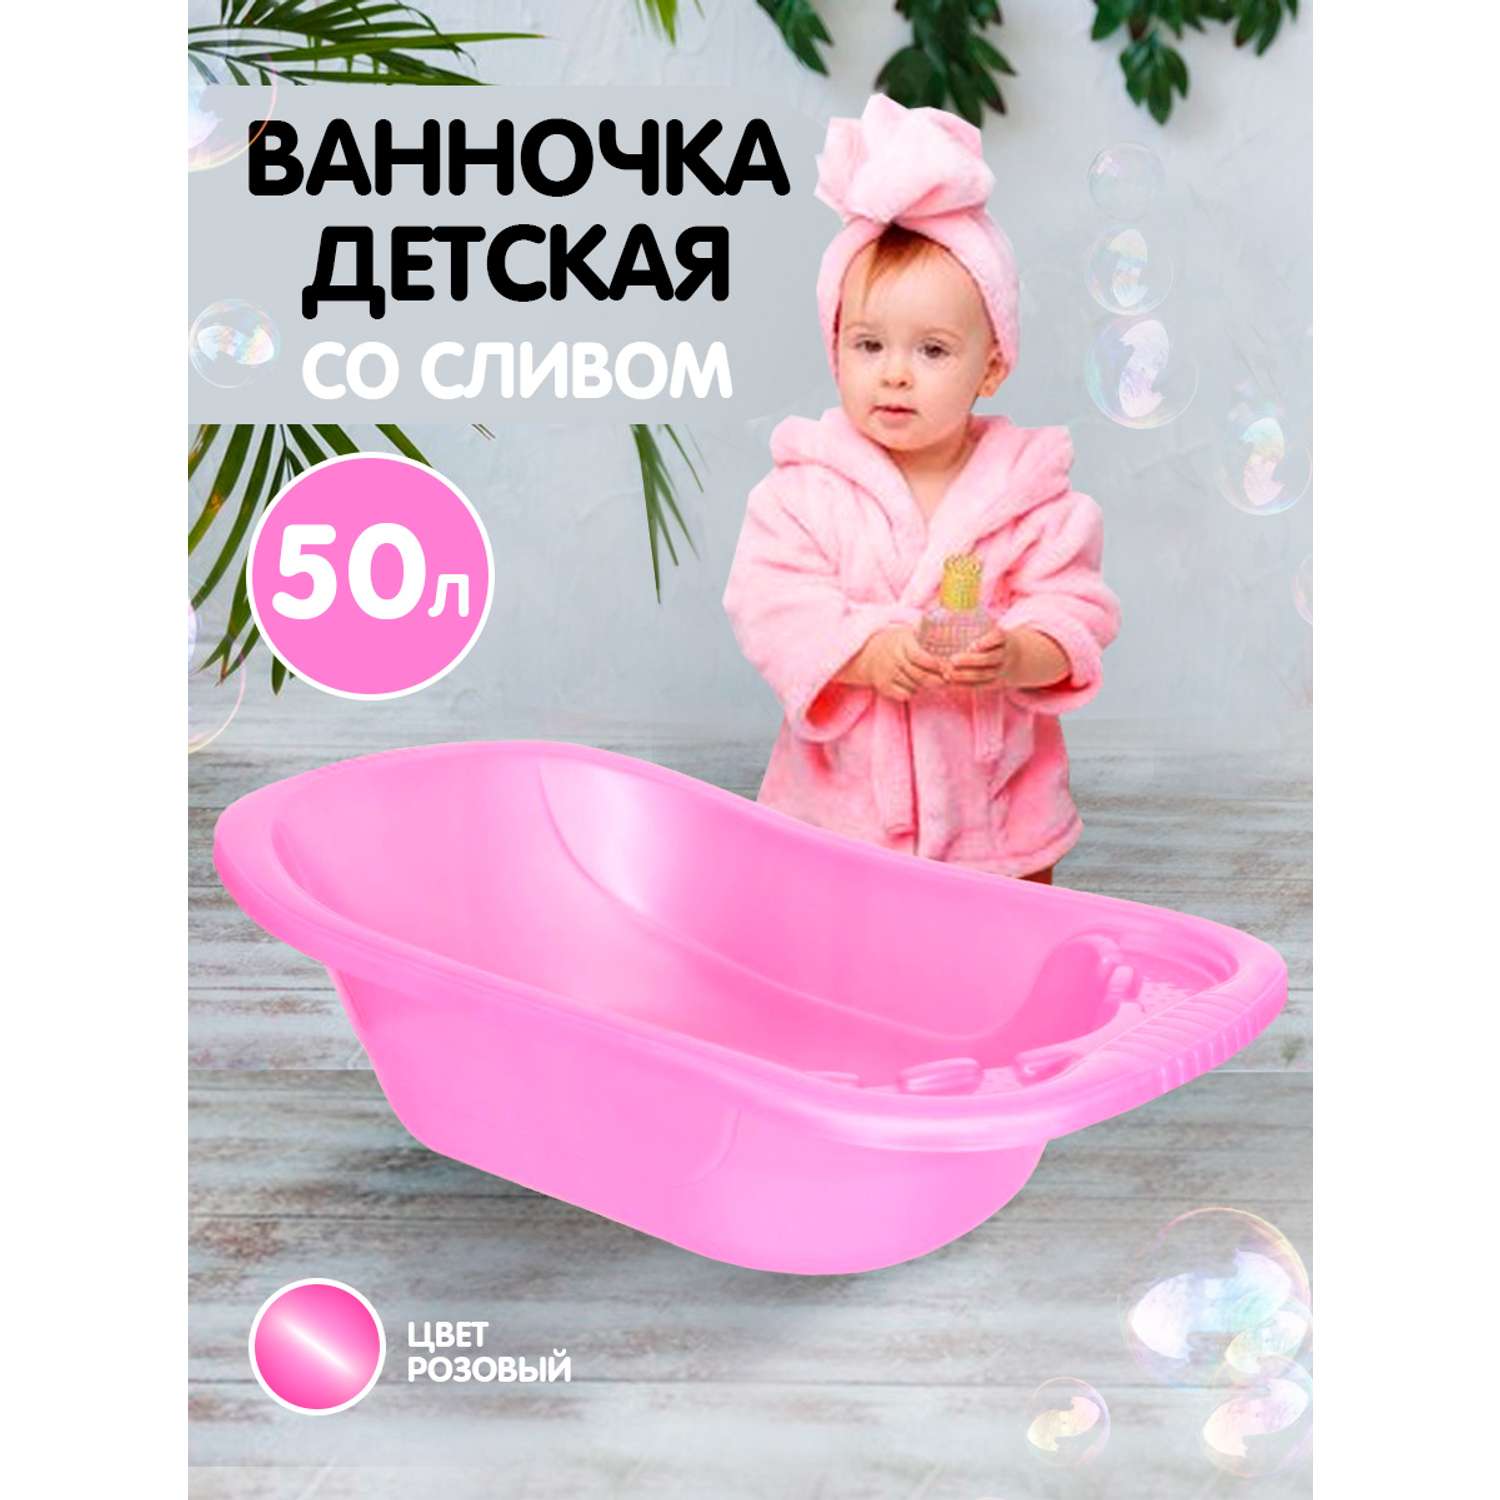 Ванна детская elfplast для купания со сливным клапаном розовый перламутр 50 л - фото 2